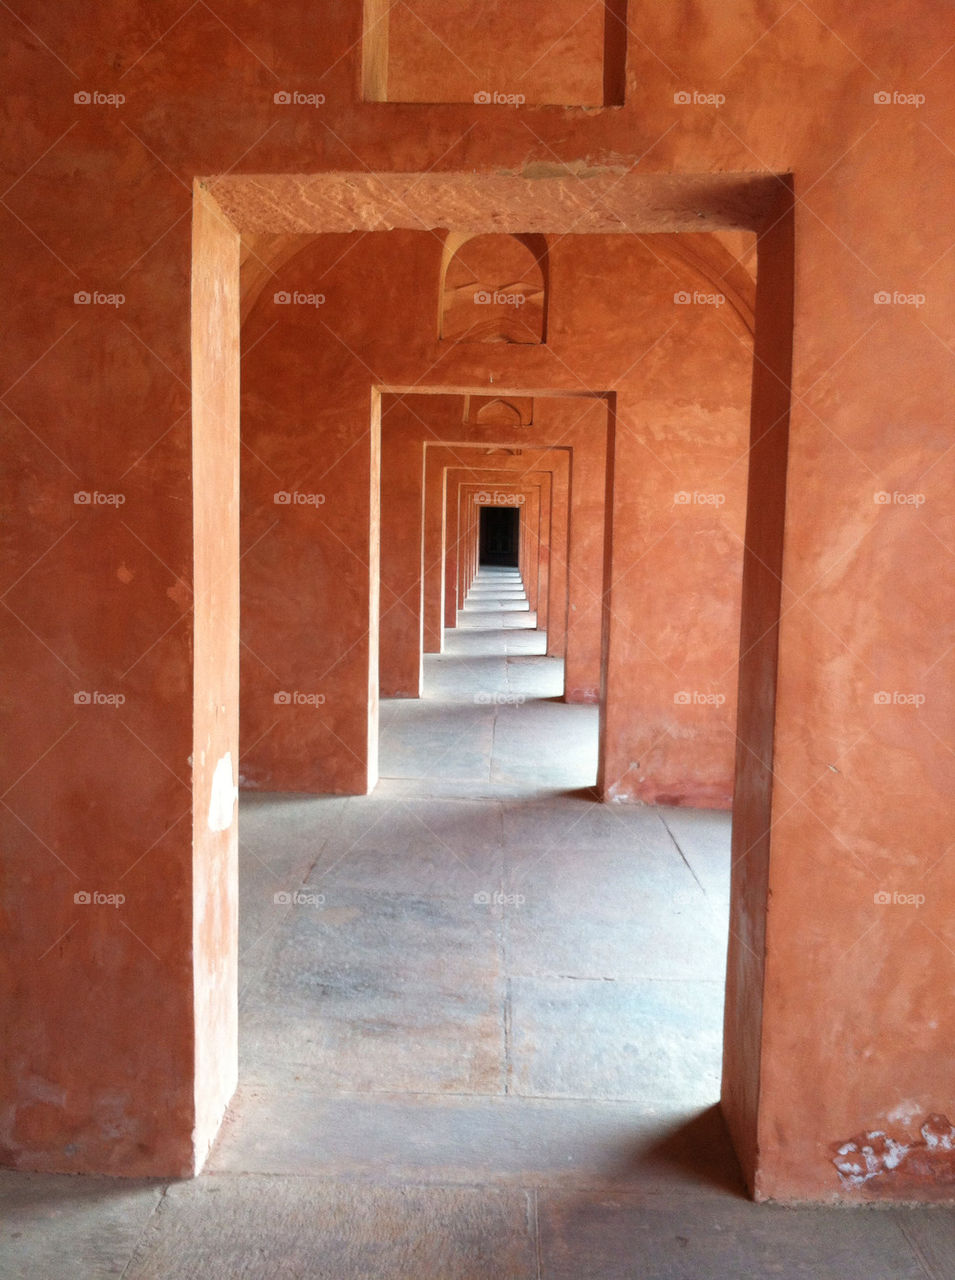 door india hallway never by rob_vh